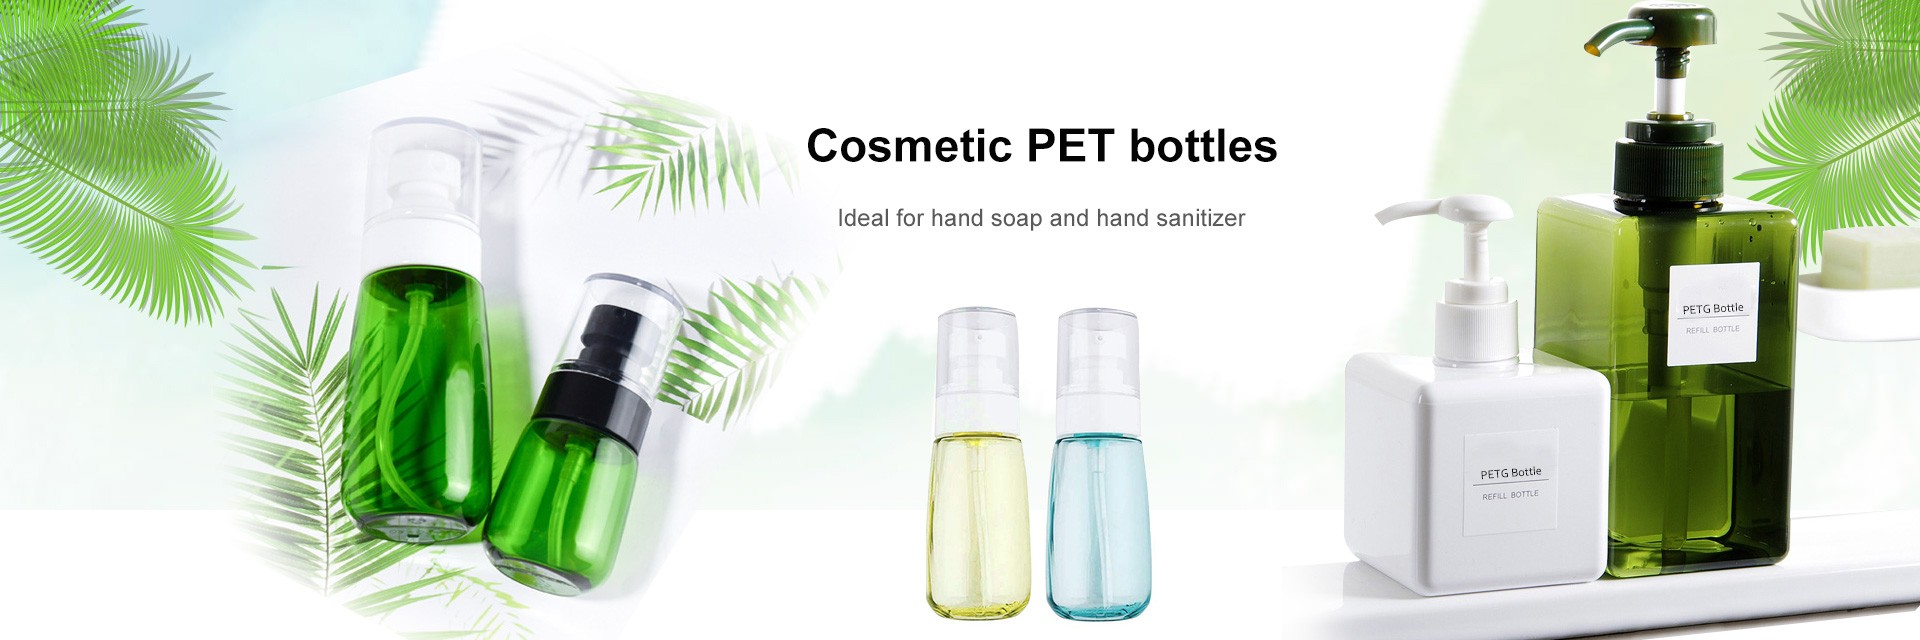 Kosmetische PET-Flaschen